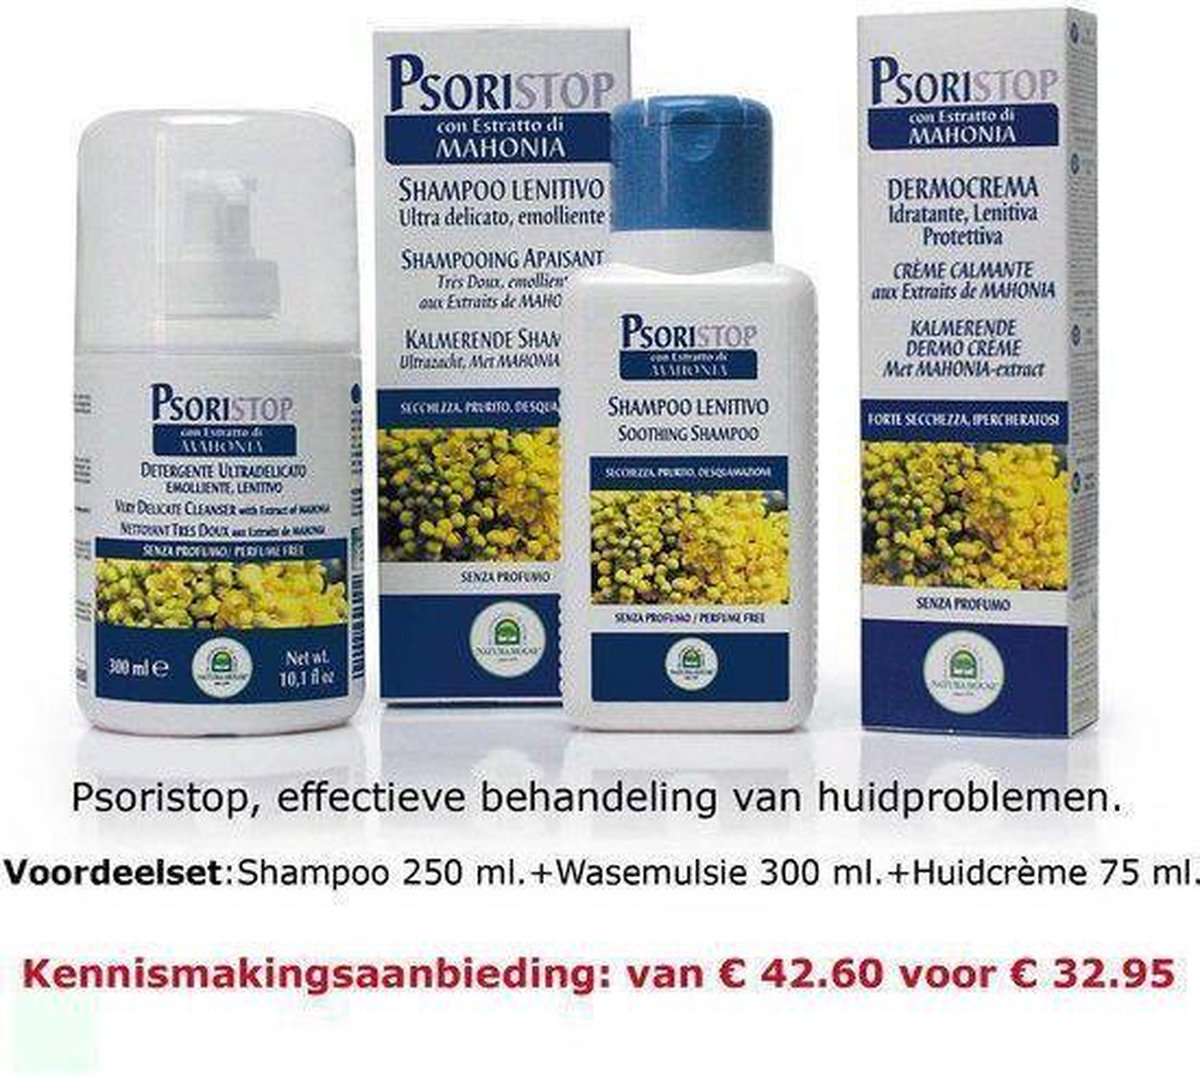 Psoristop - Psoriasis verzorging - Voordeelset-3 producten!